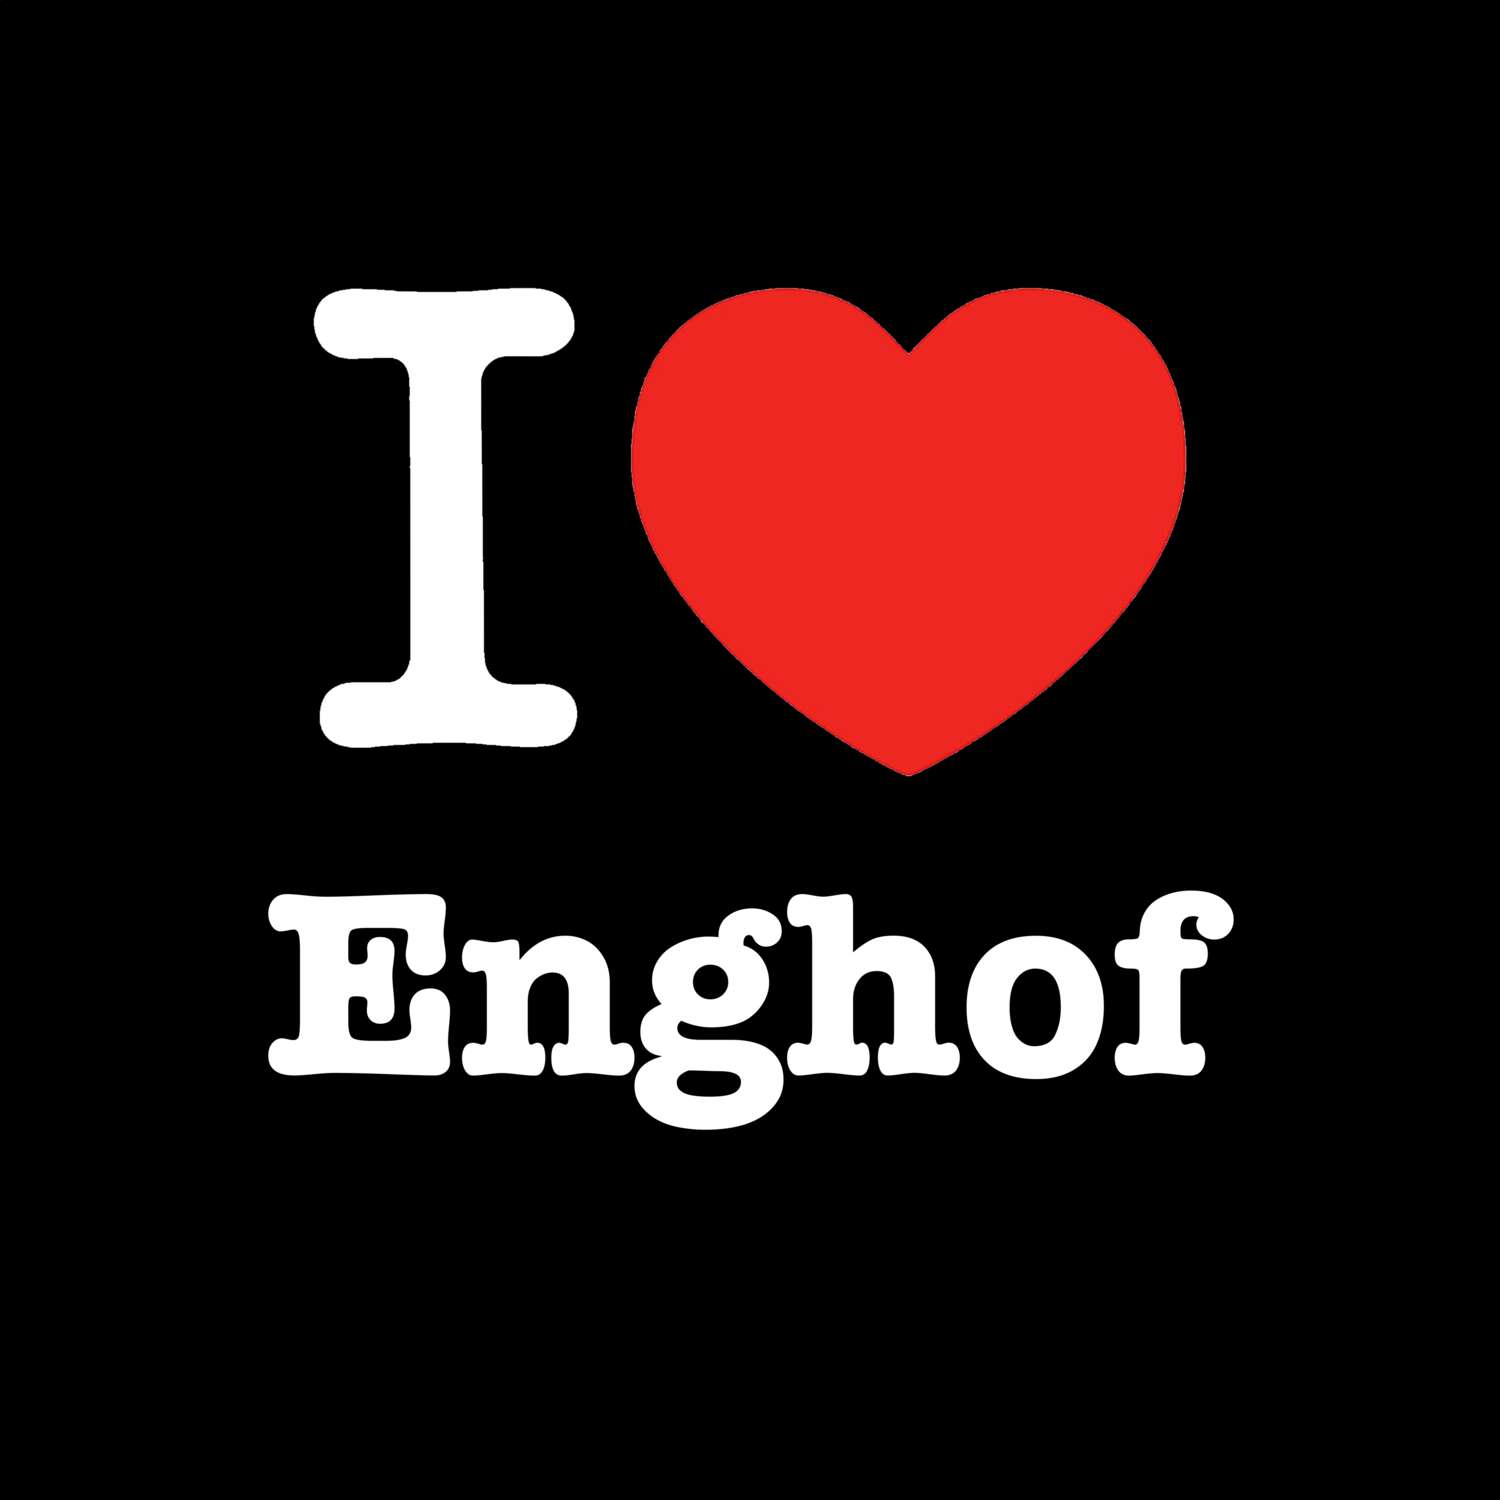 Enghof T-Shirt »I love«